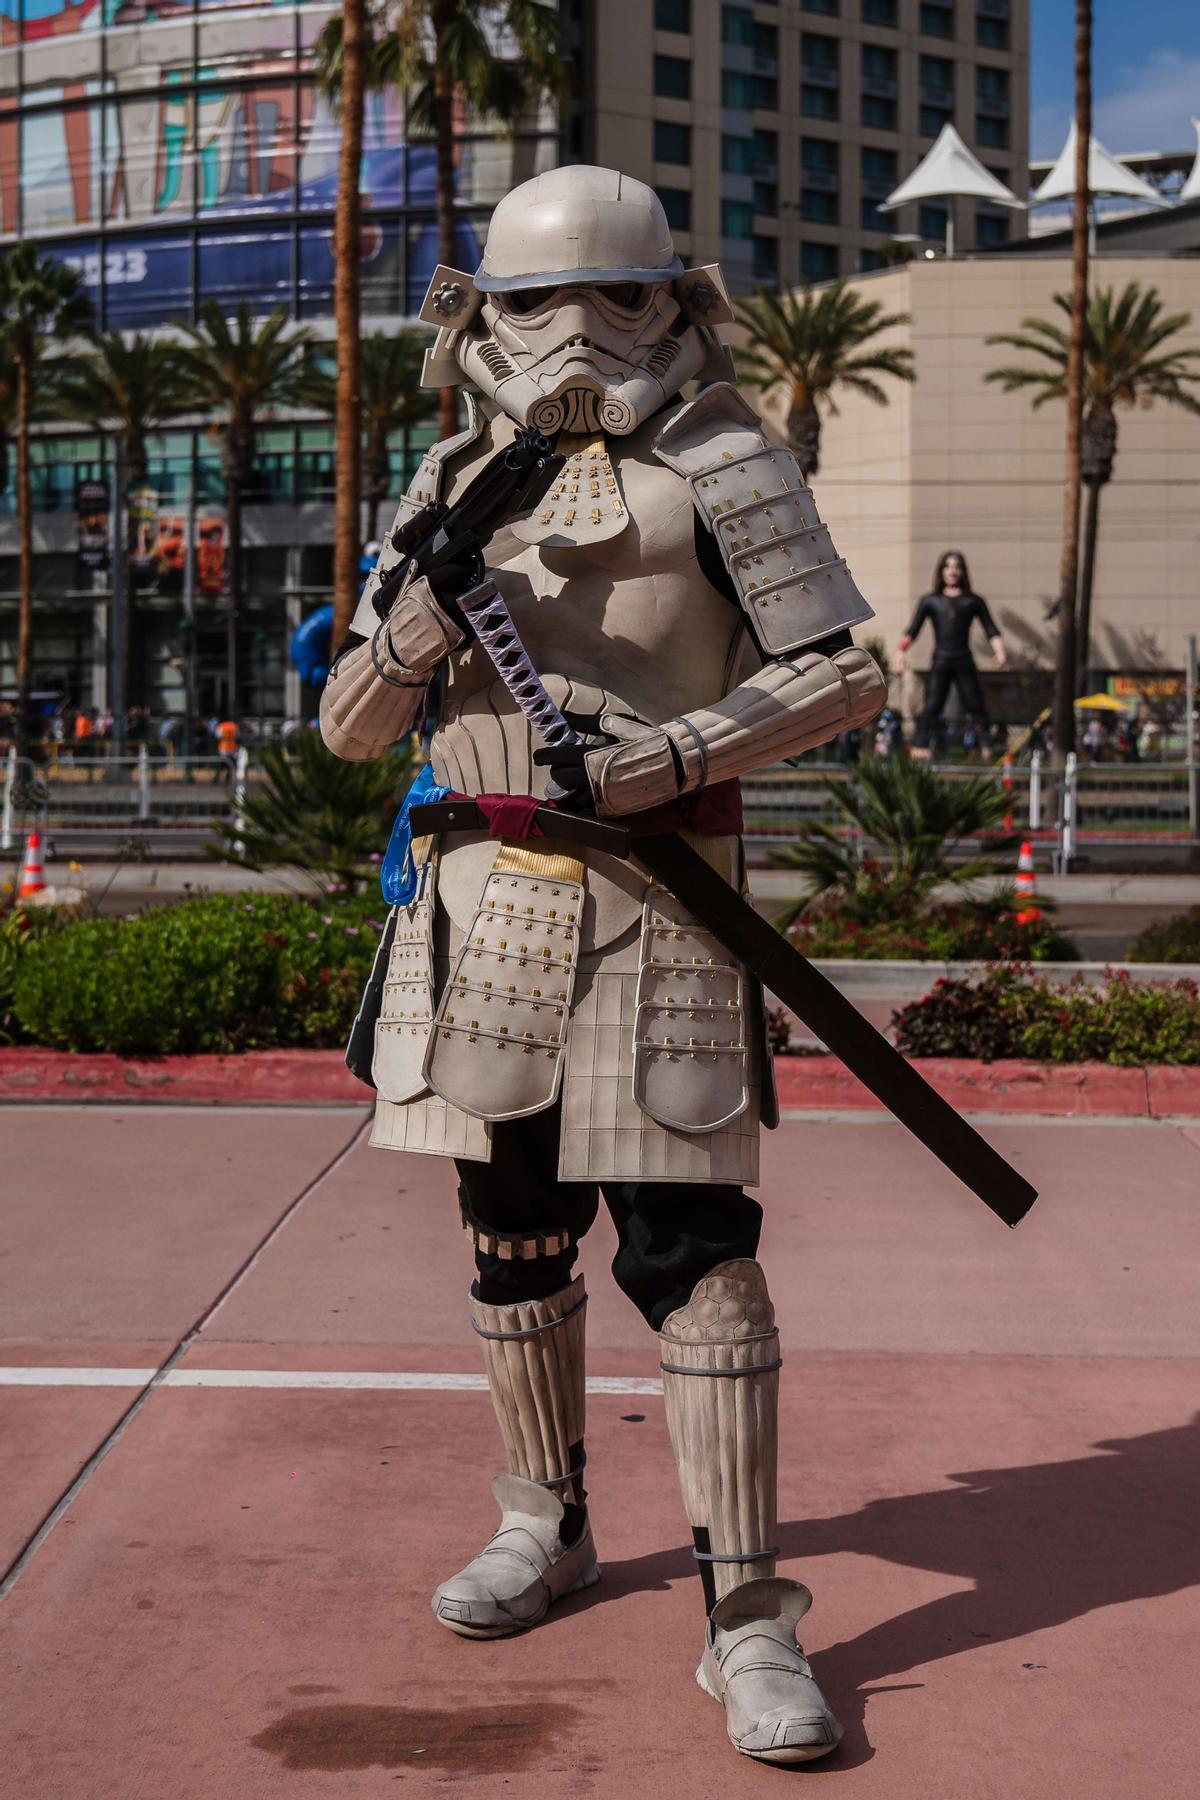 Disfraces imaginativos en el Comic-con de San Diego, que fusionan la cultura samurai con los referentes de Star Wars